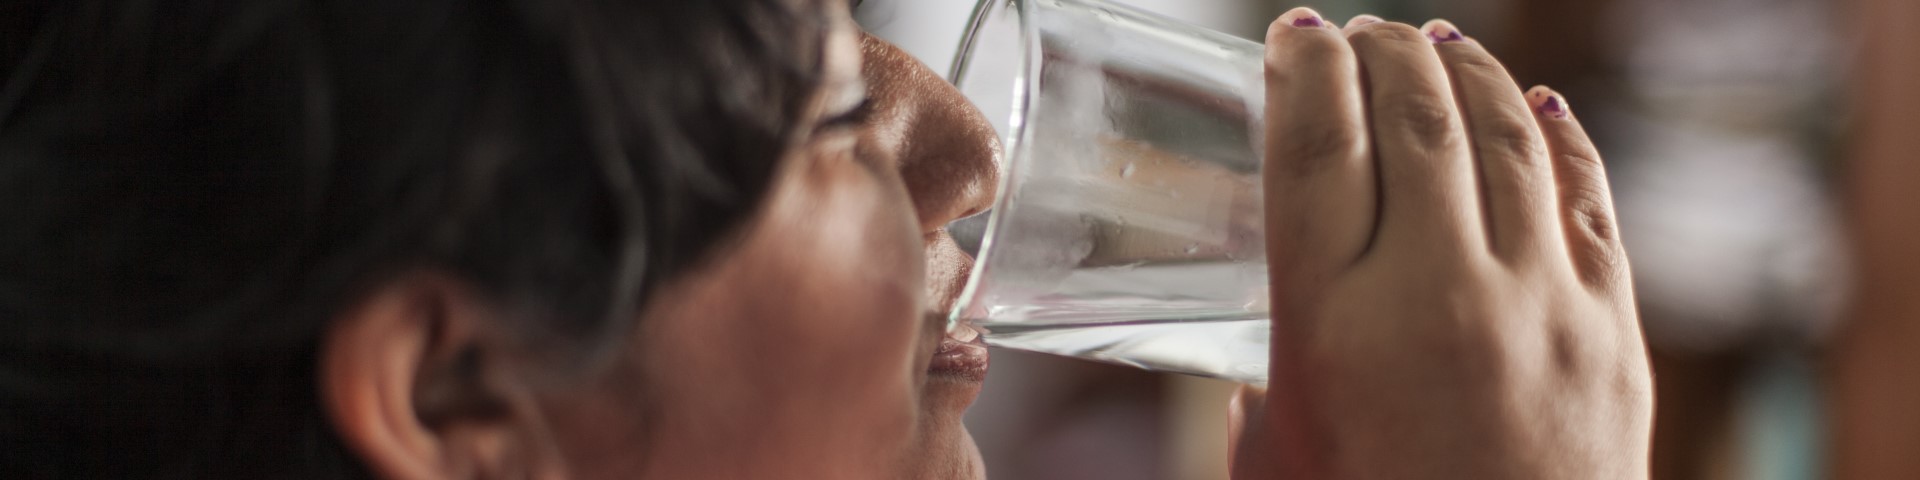 Eine Frau trinkt Wasser aus einem Glas.